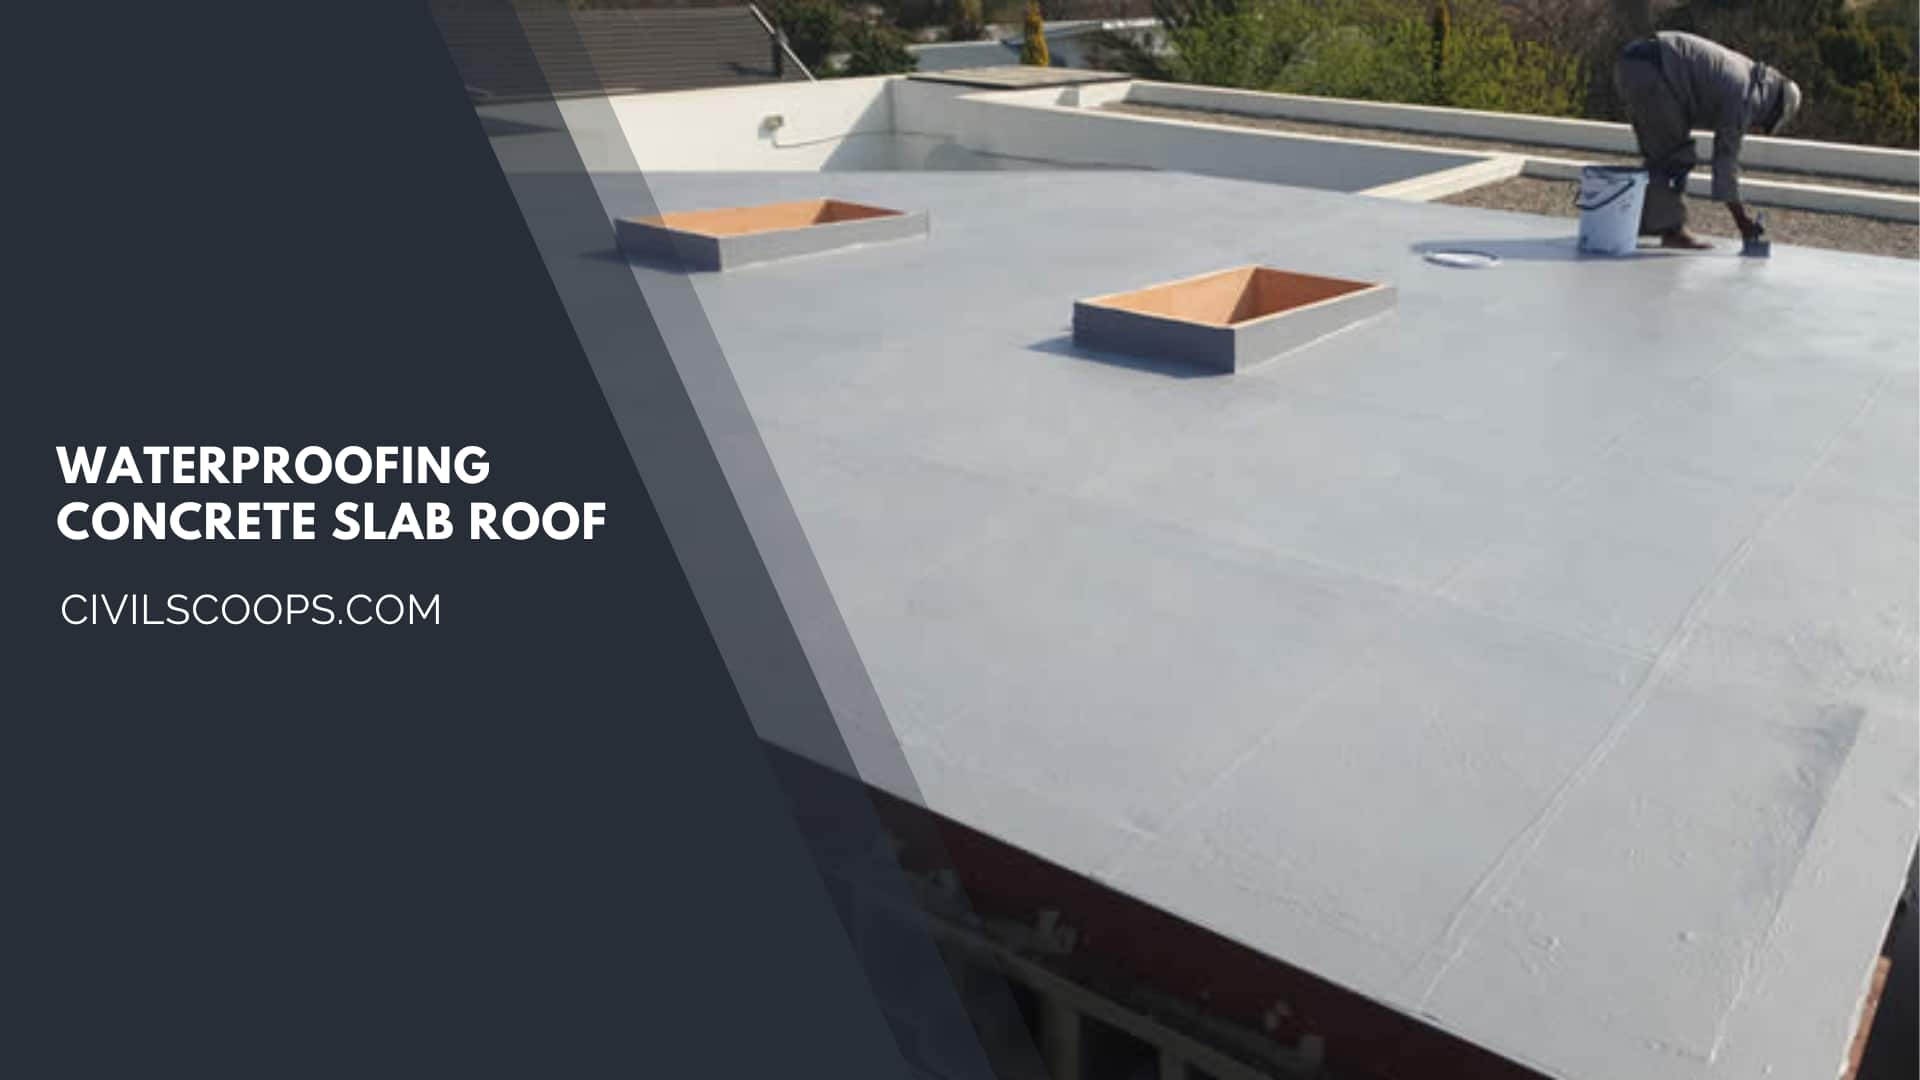 Waterproofing Concrete Slab Roof